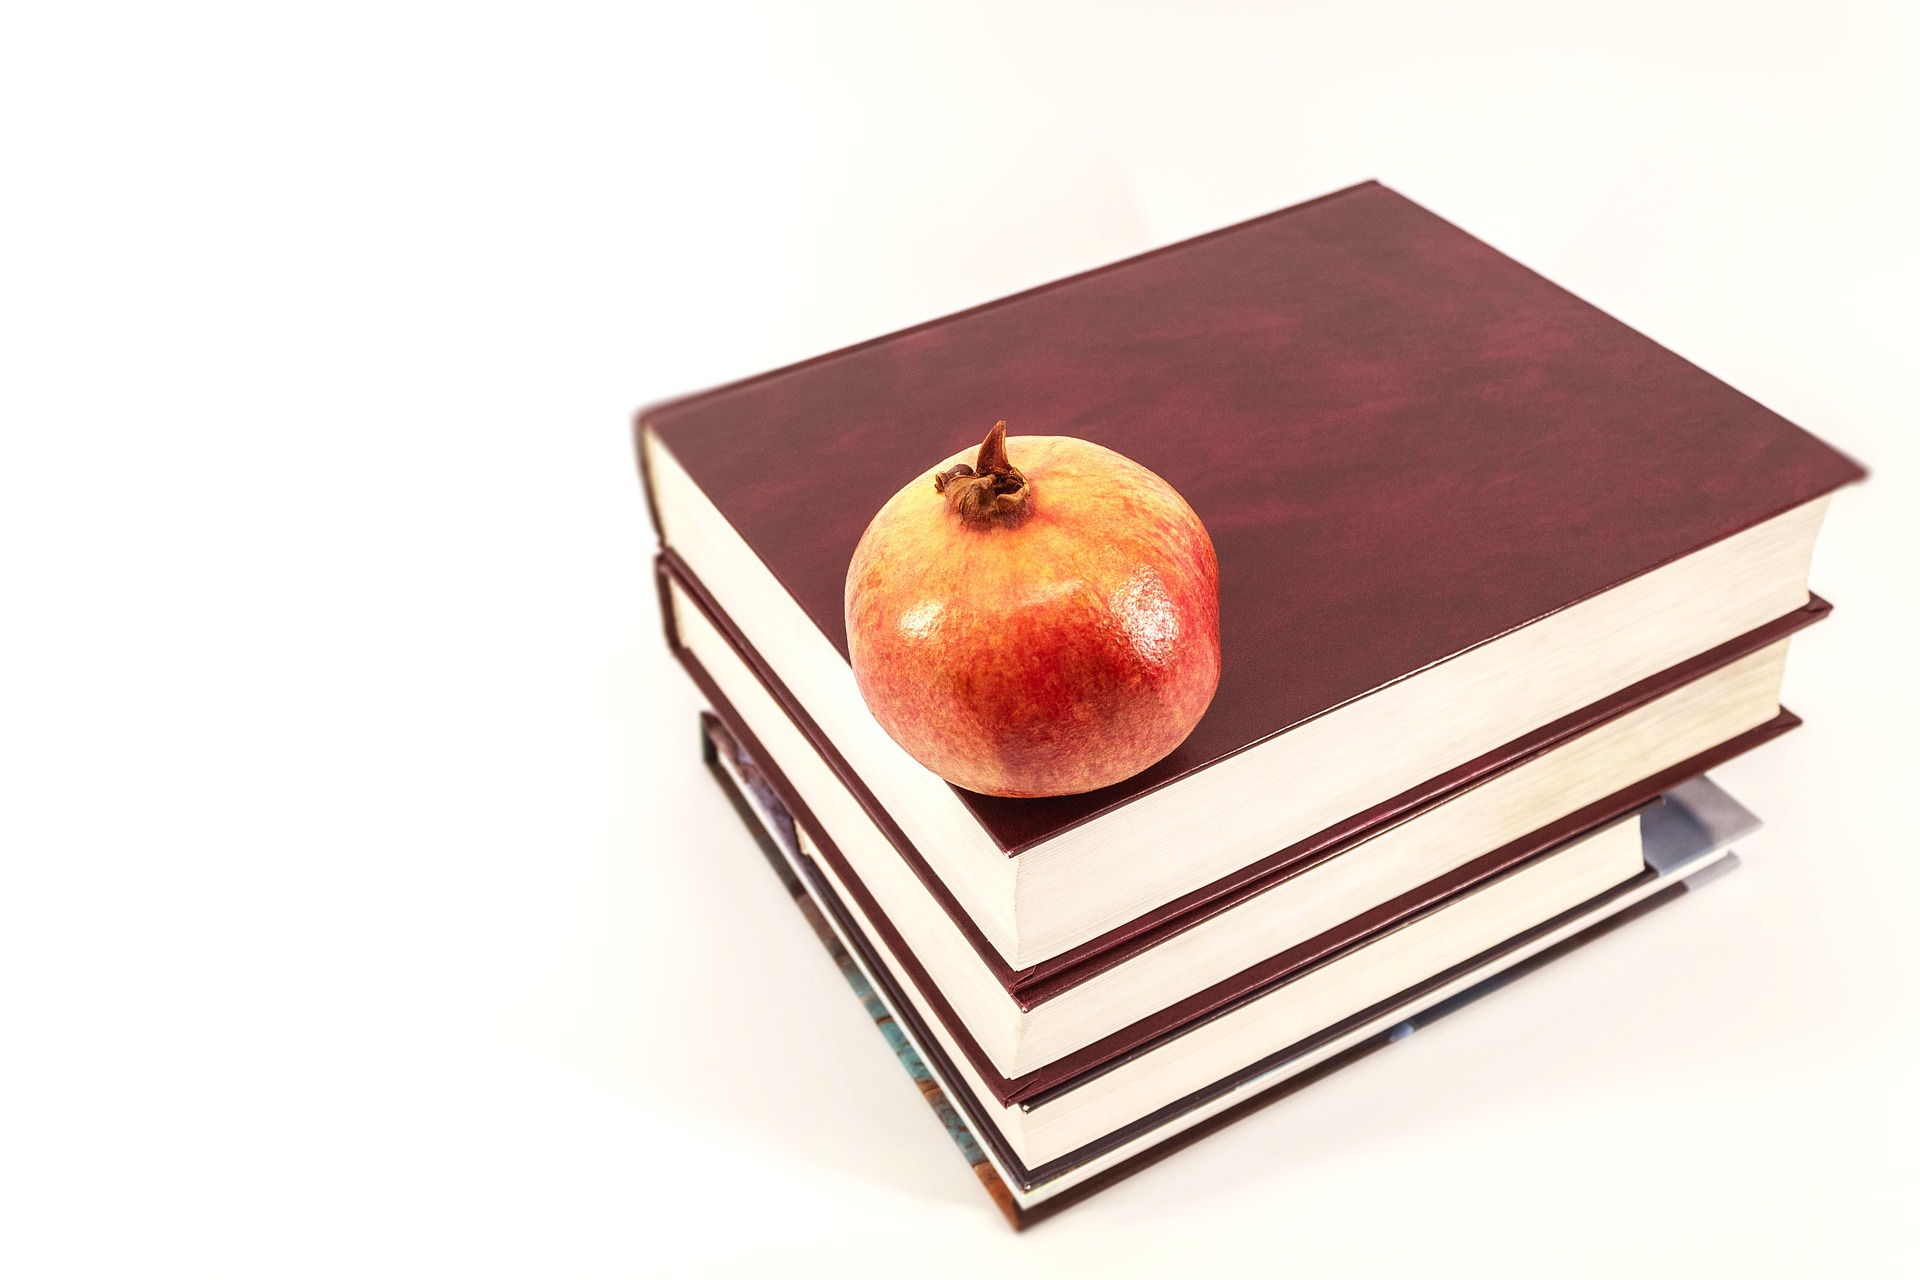 livros para estudo em cima de uma mesa com uma maçã em cima deles